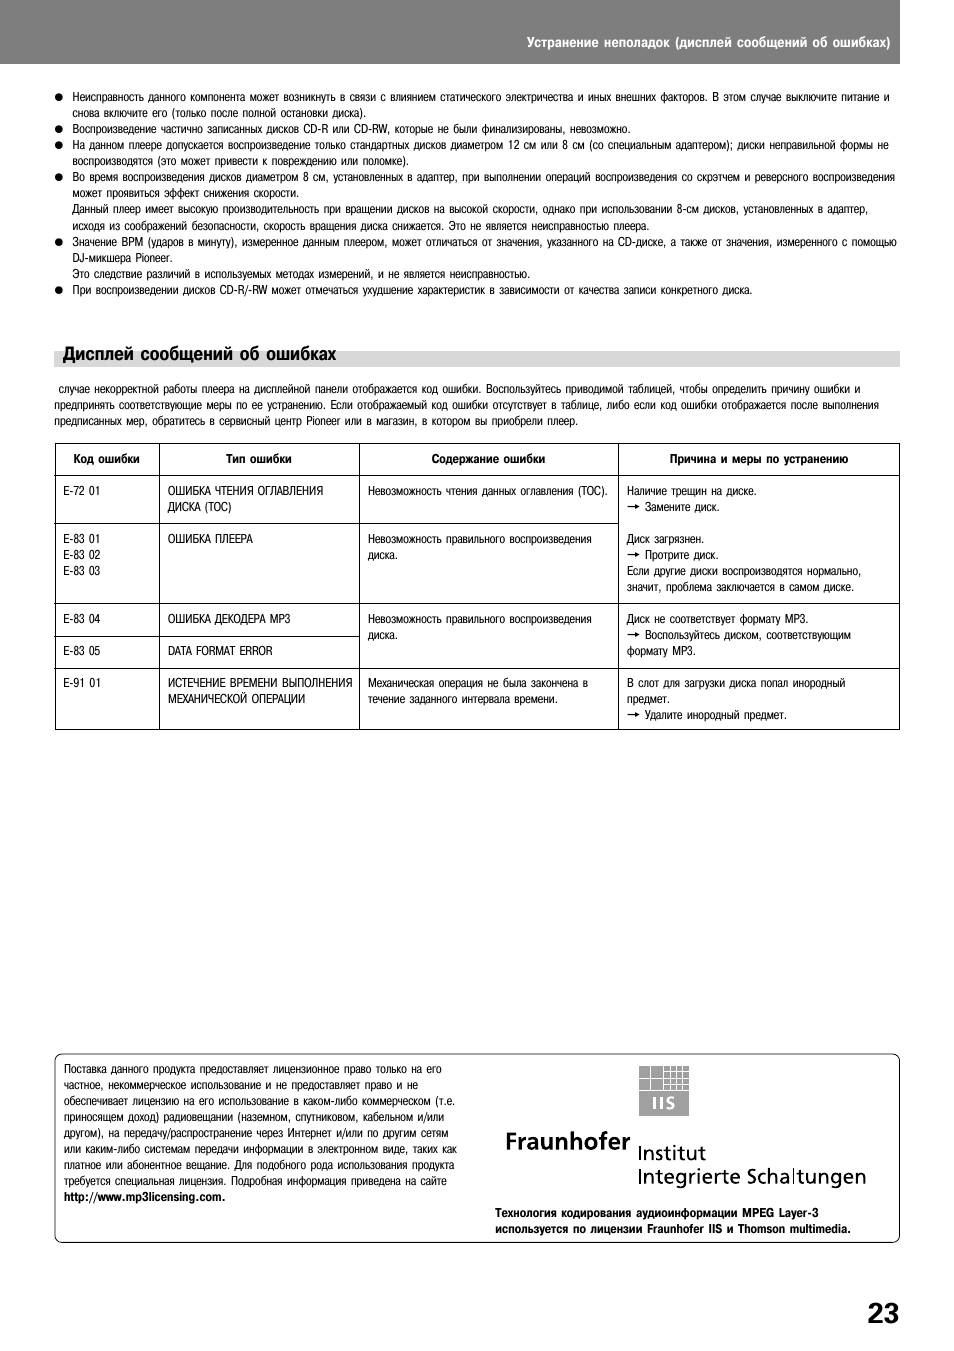 Дисплей сообщений об ошибках | Инструкция по эксплуатации Pioneer CDJ-1000 MK3 | Страница 23 / 24